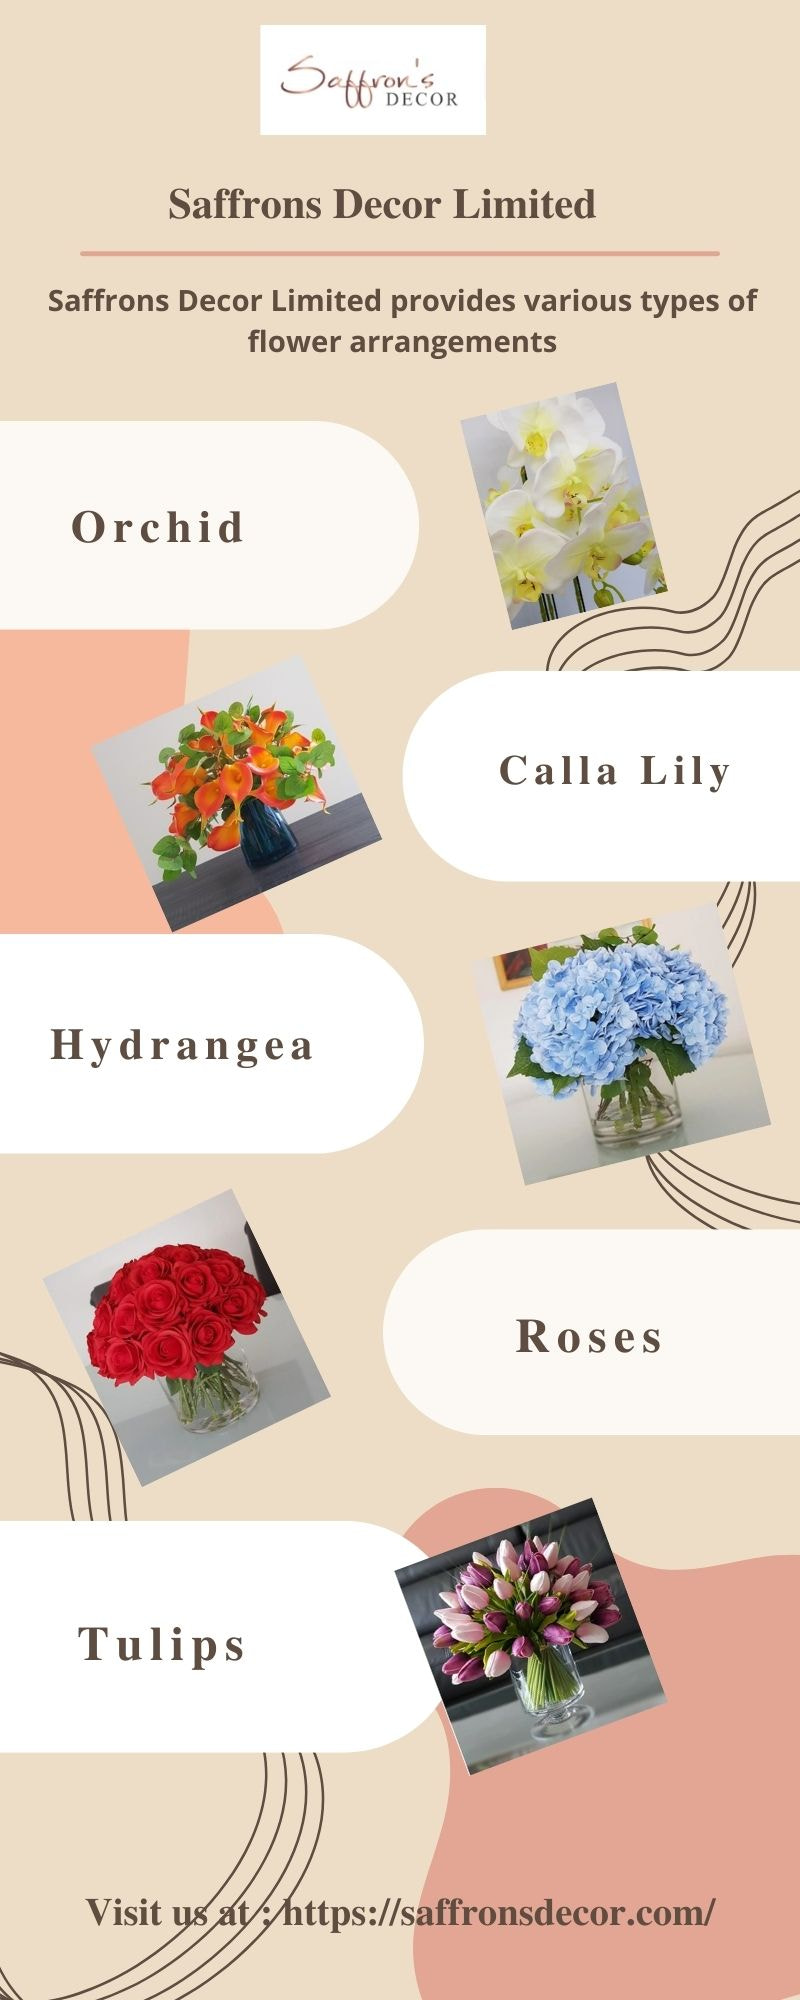 Artificial Flowers - Saffrons Decor Limited